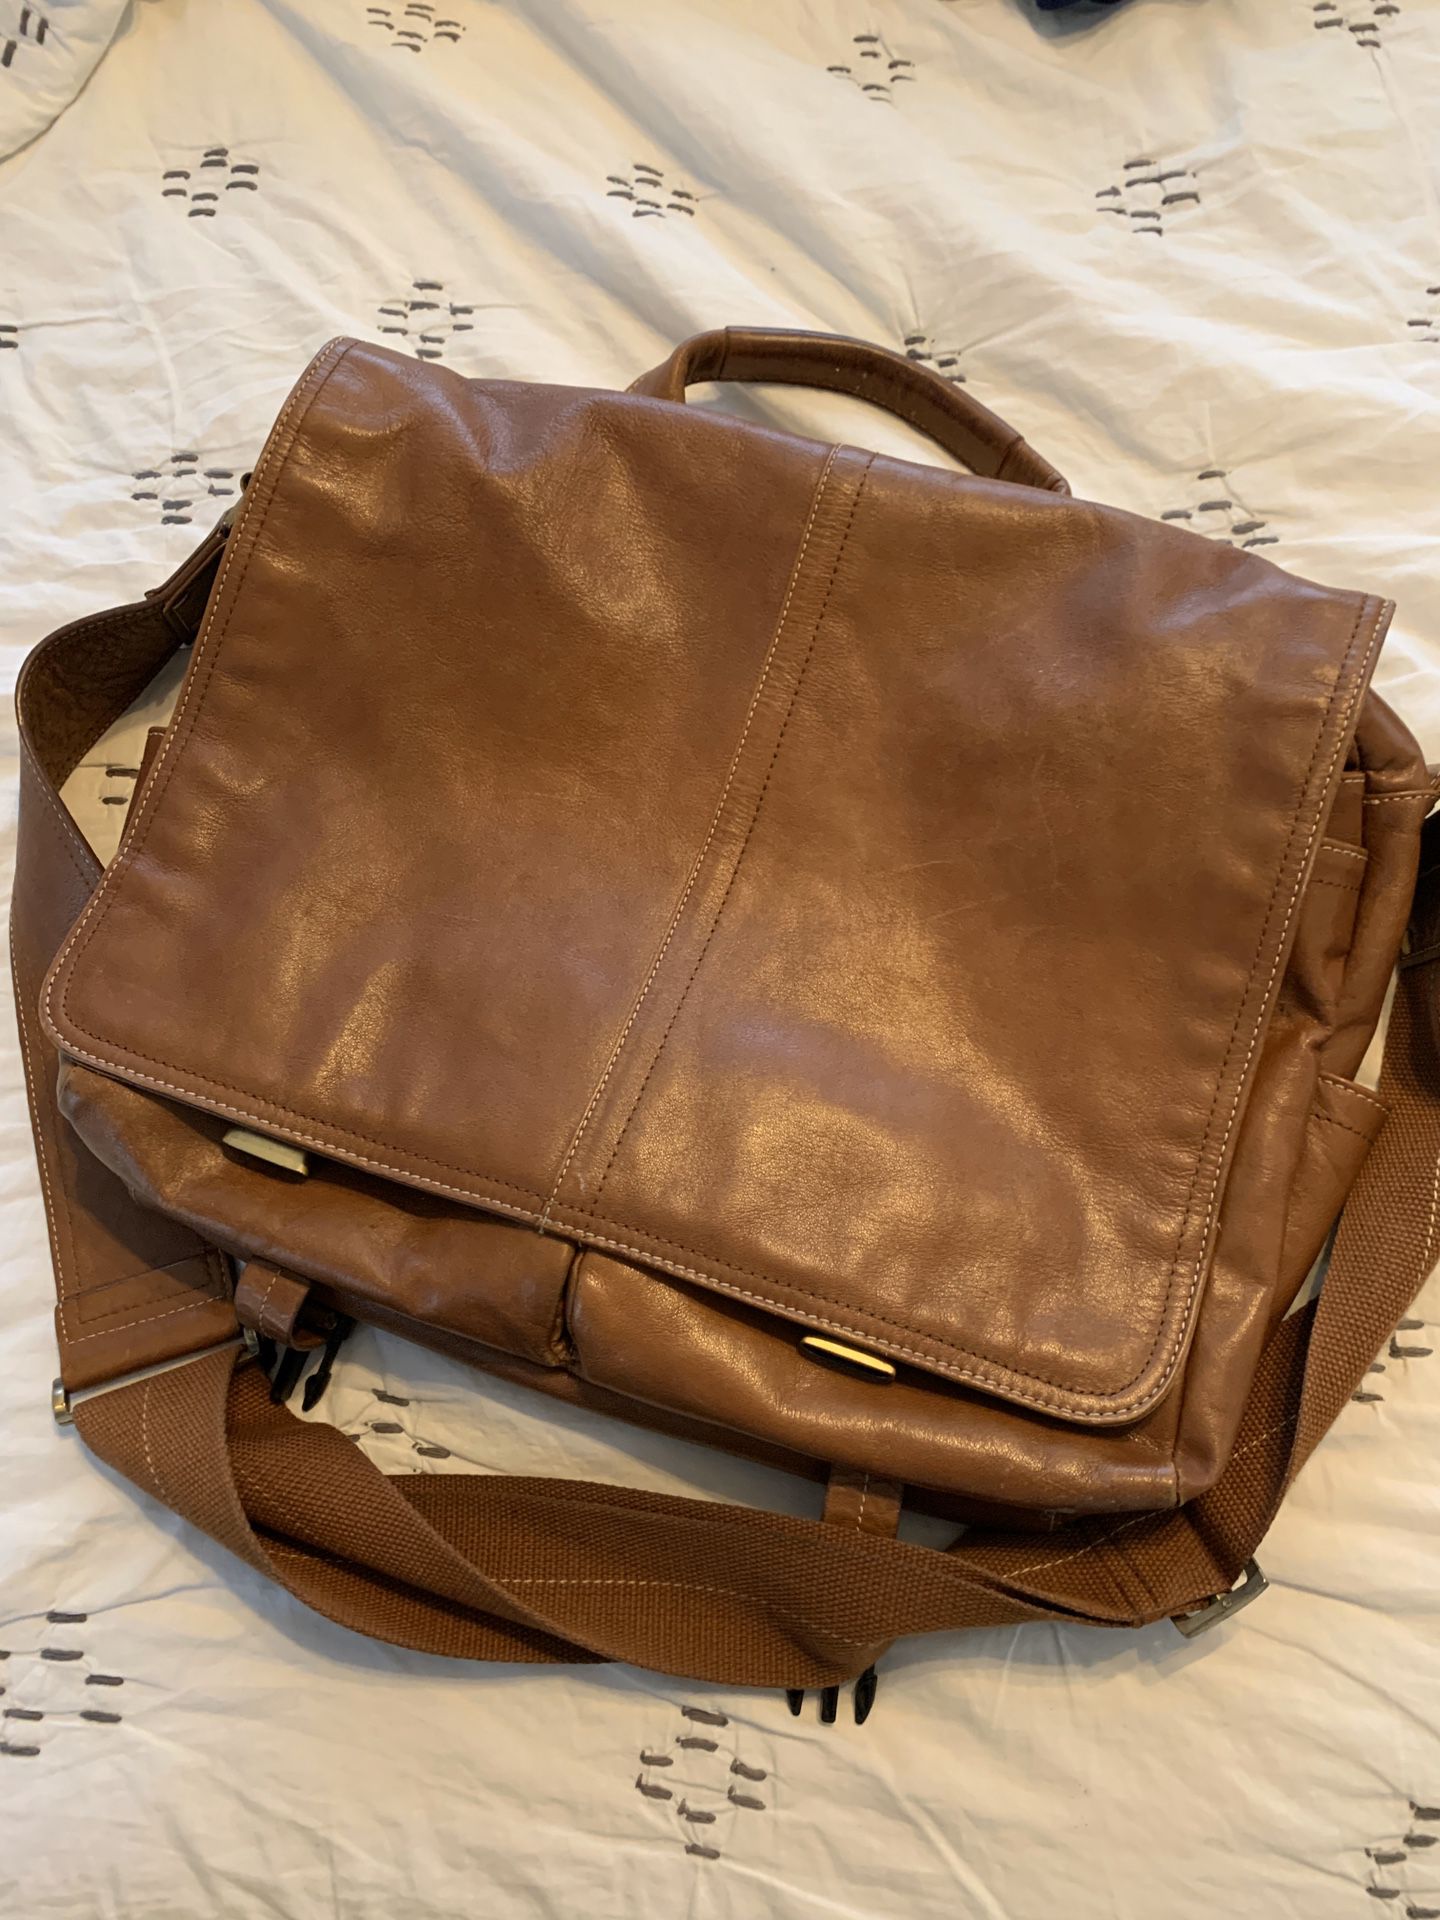 Leather laptop/messenger bag